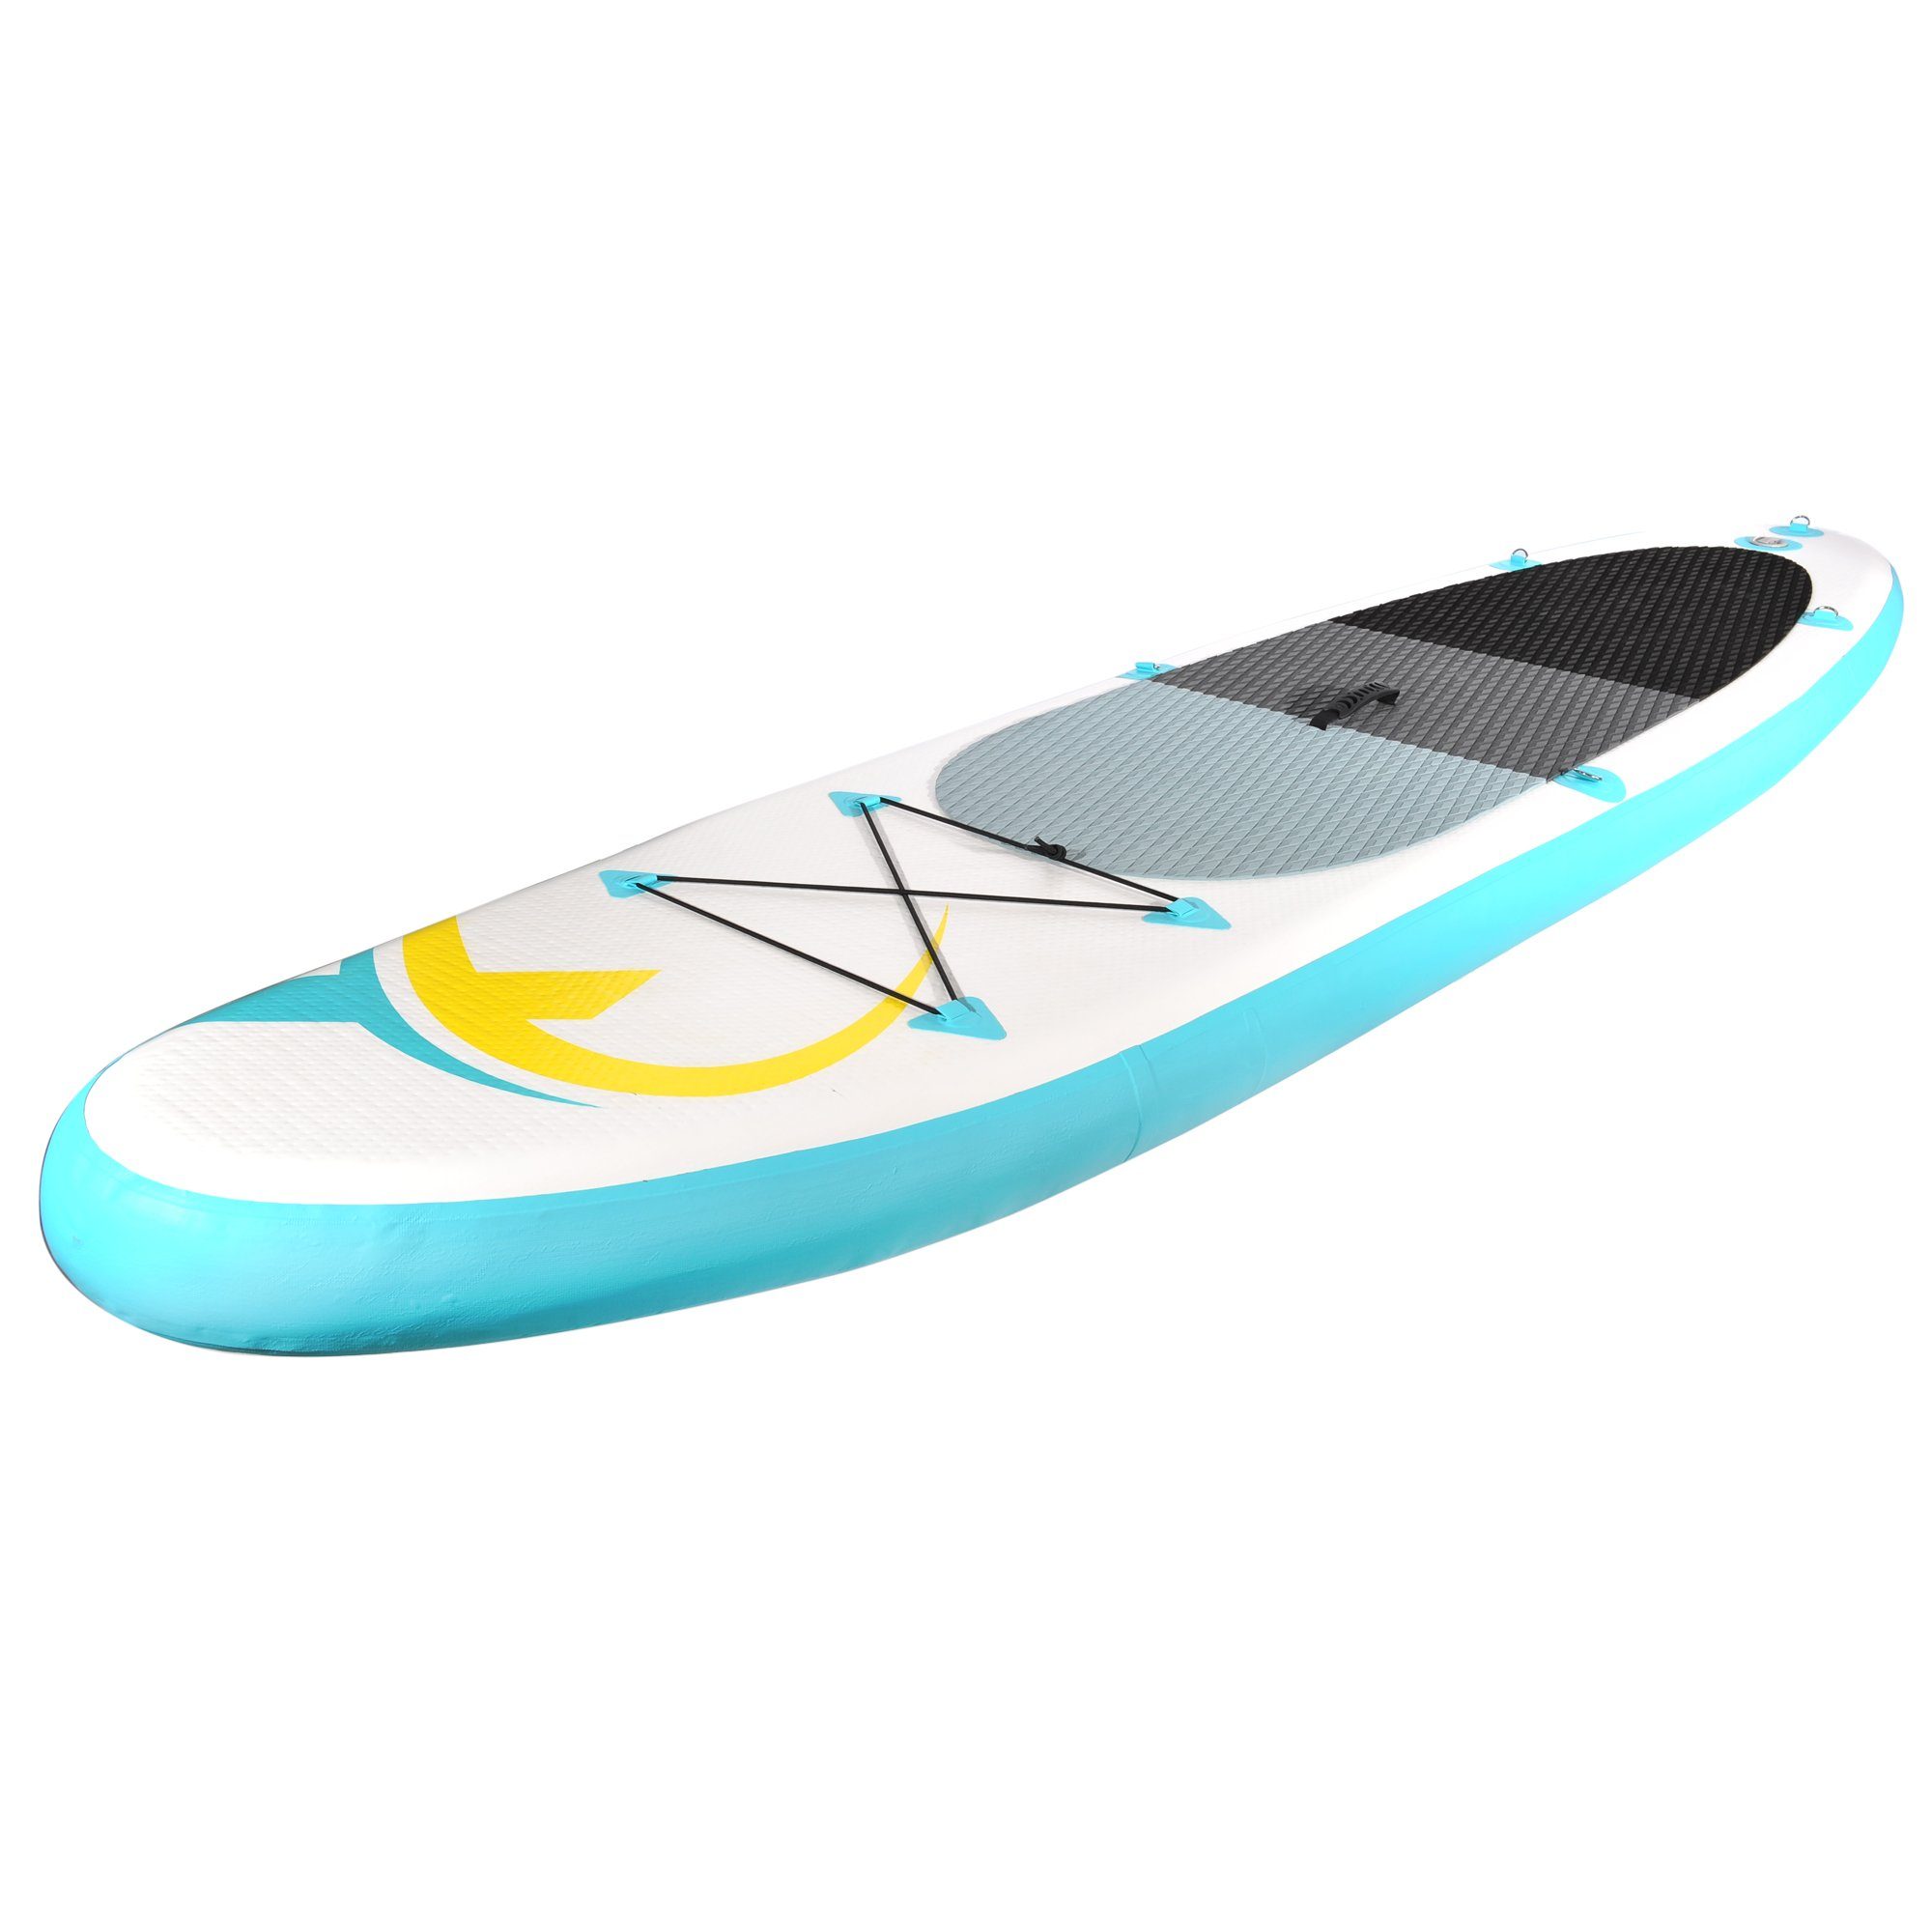 - Paddle 320x78x15cm, & inkl. Surfbrett, zu aufblasbar up Tasche, - SUP-Board, Stand türkis/gelb Surf-Board Board leicht PB320 - NEMAXX transportieren Nemaxx Paddel Inflatable